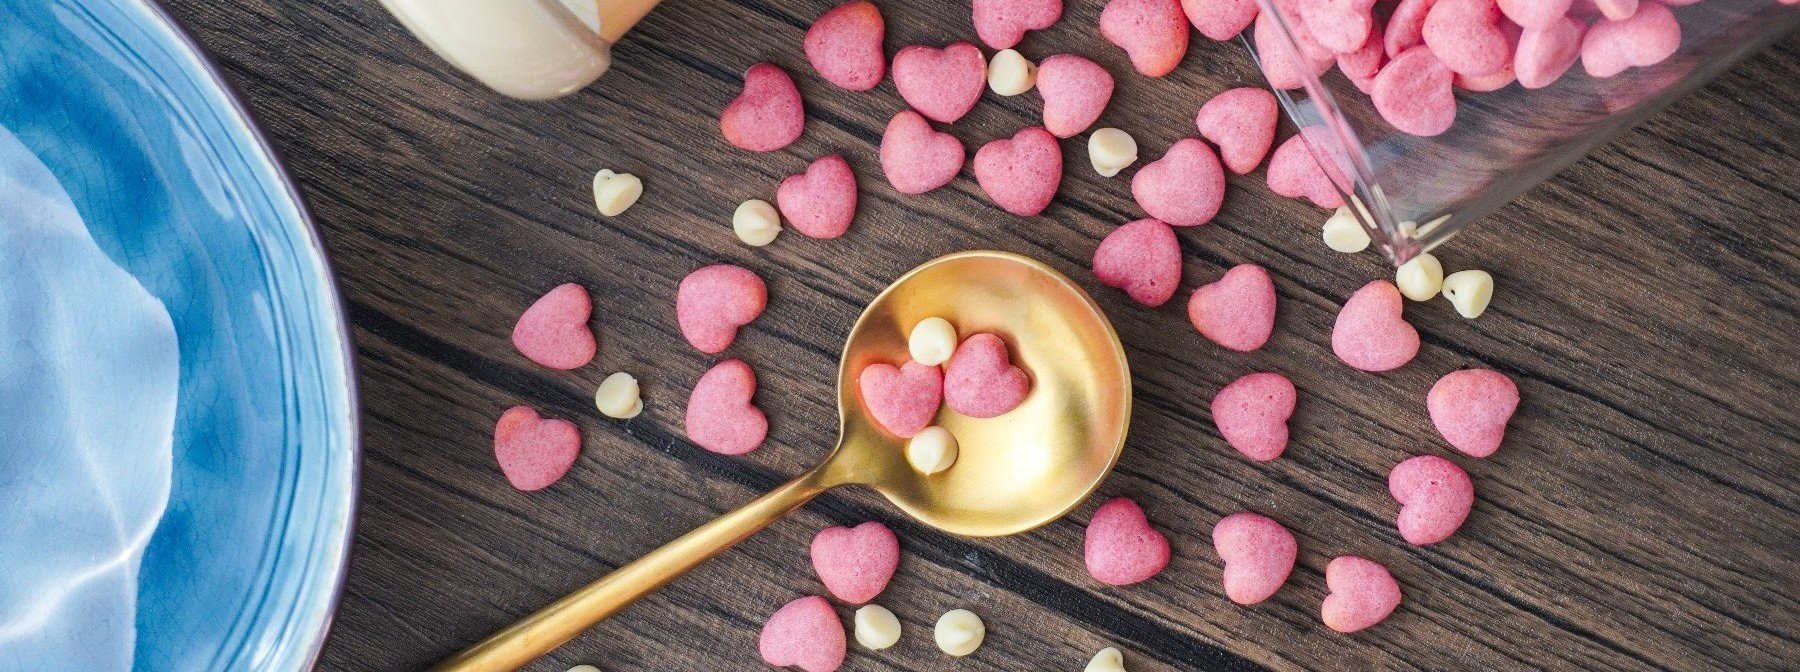 Valentino dienos receptas: širdelės formos sausainiai su gausybe baltymų